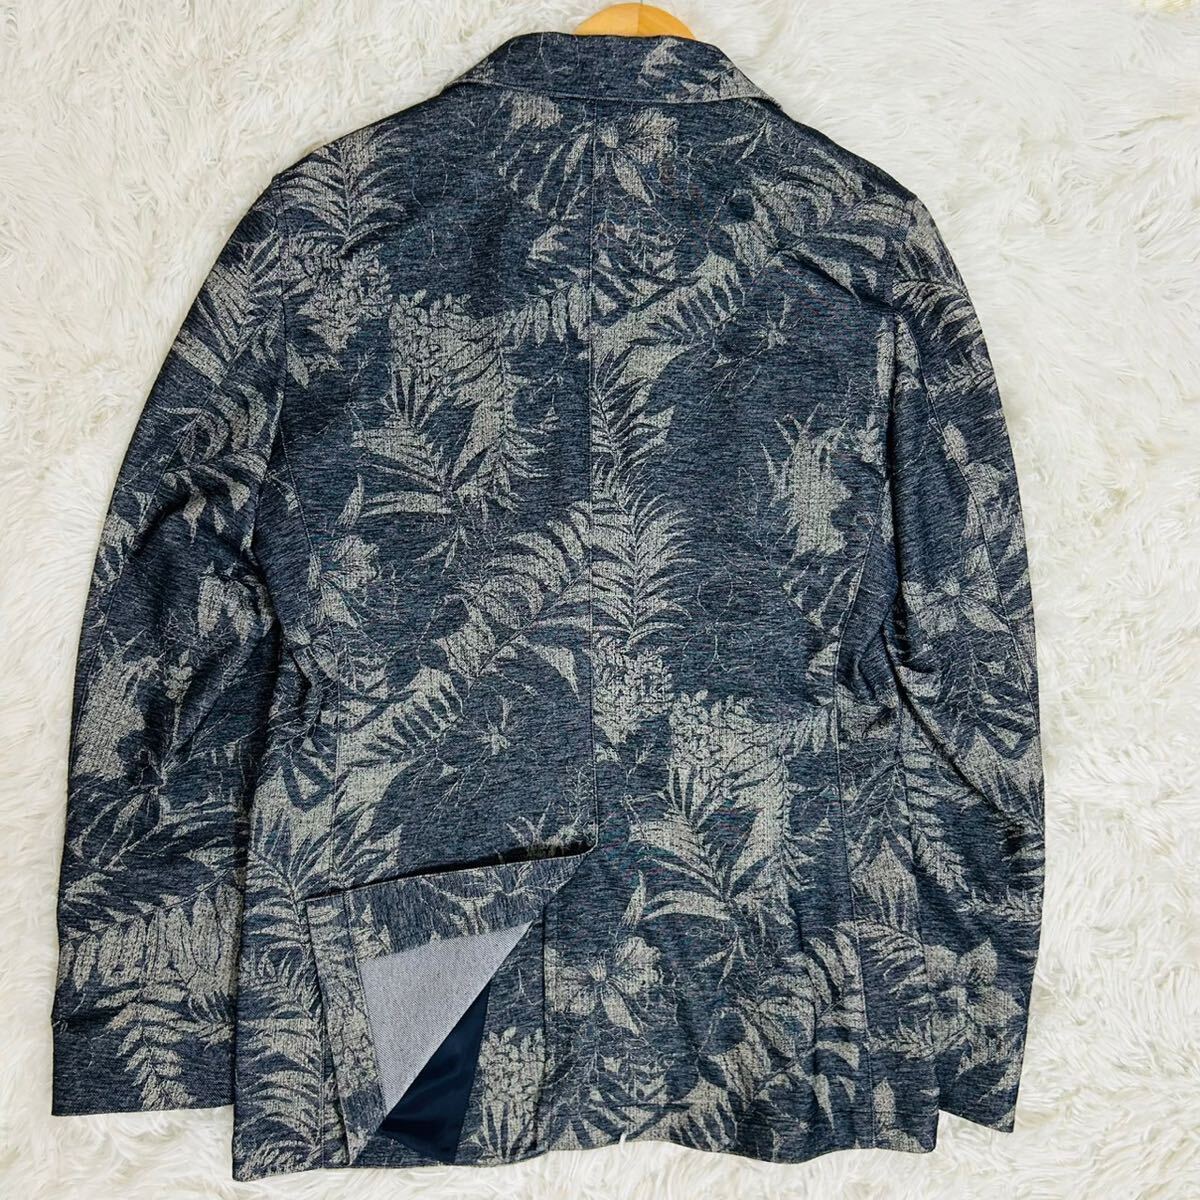  превосходный товар * Mila Schon [ давление шт. общий рисунок ] tailored jacket mila schon цветочный принт темно-синий серый весна лето необшитый на спине стрейч блейзер 48 L соответствует 2B